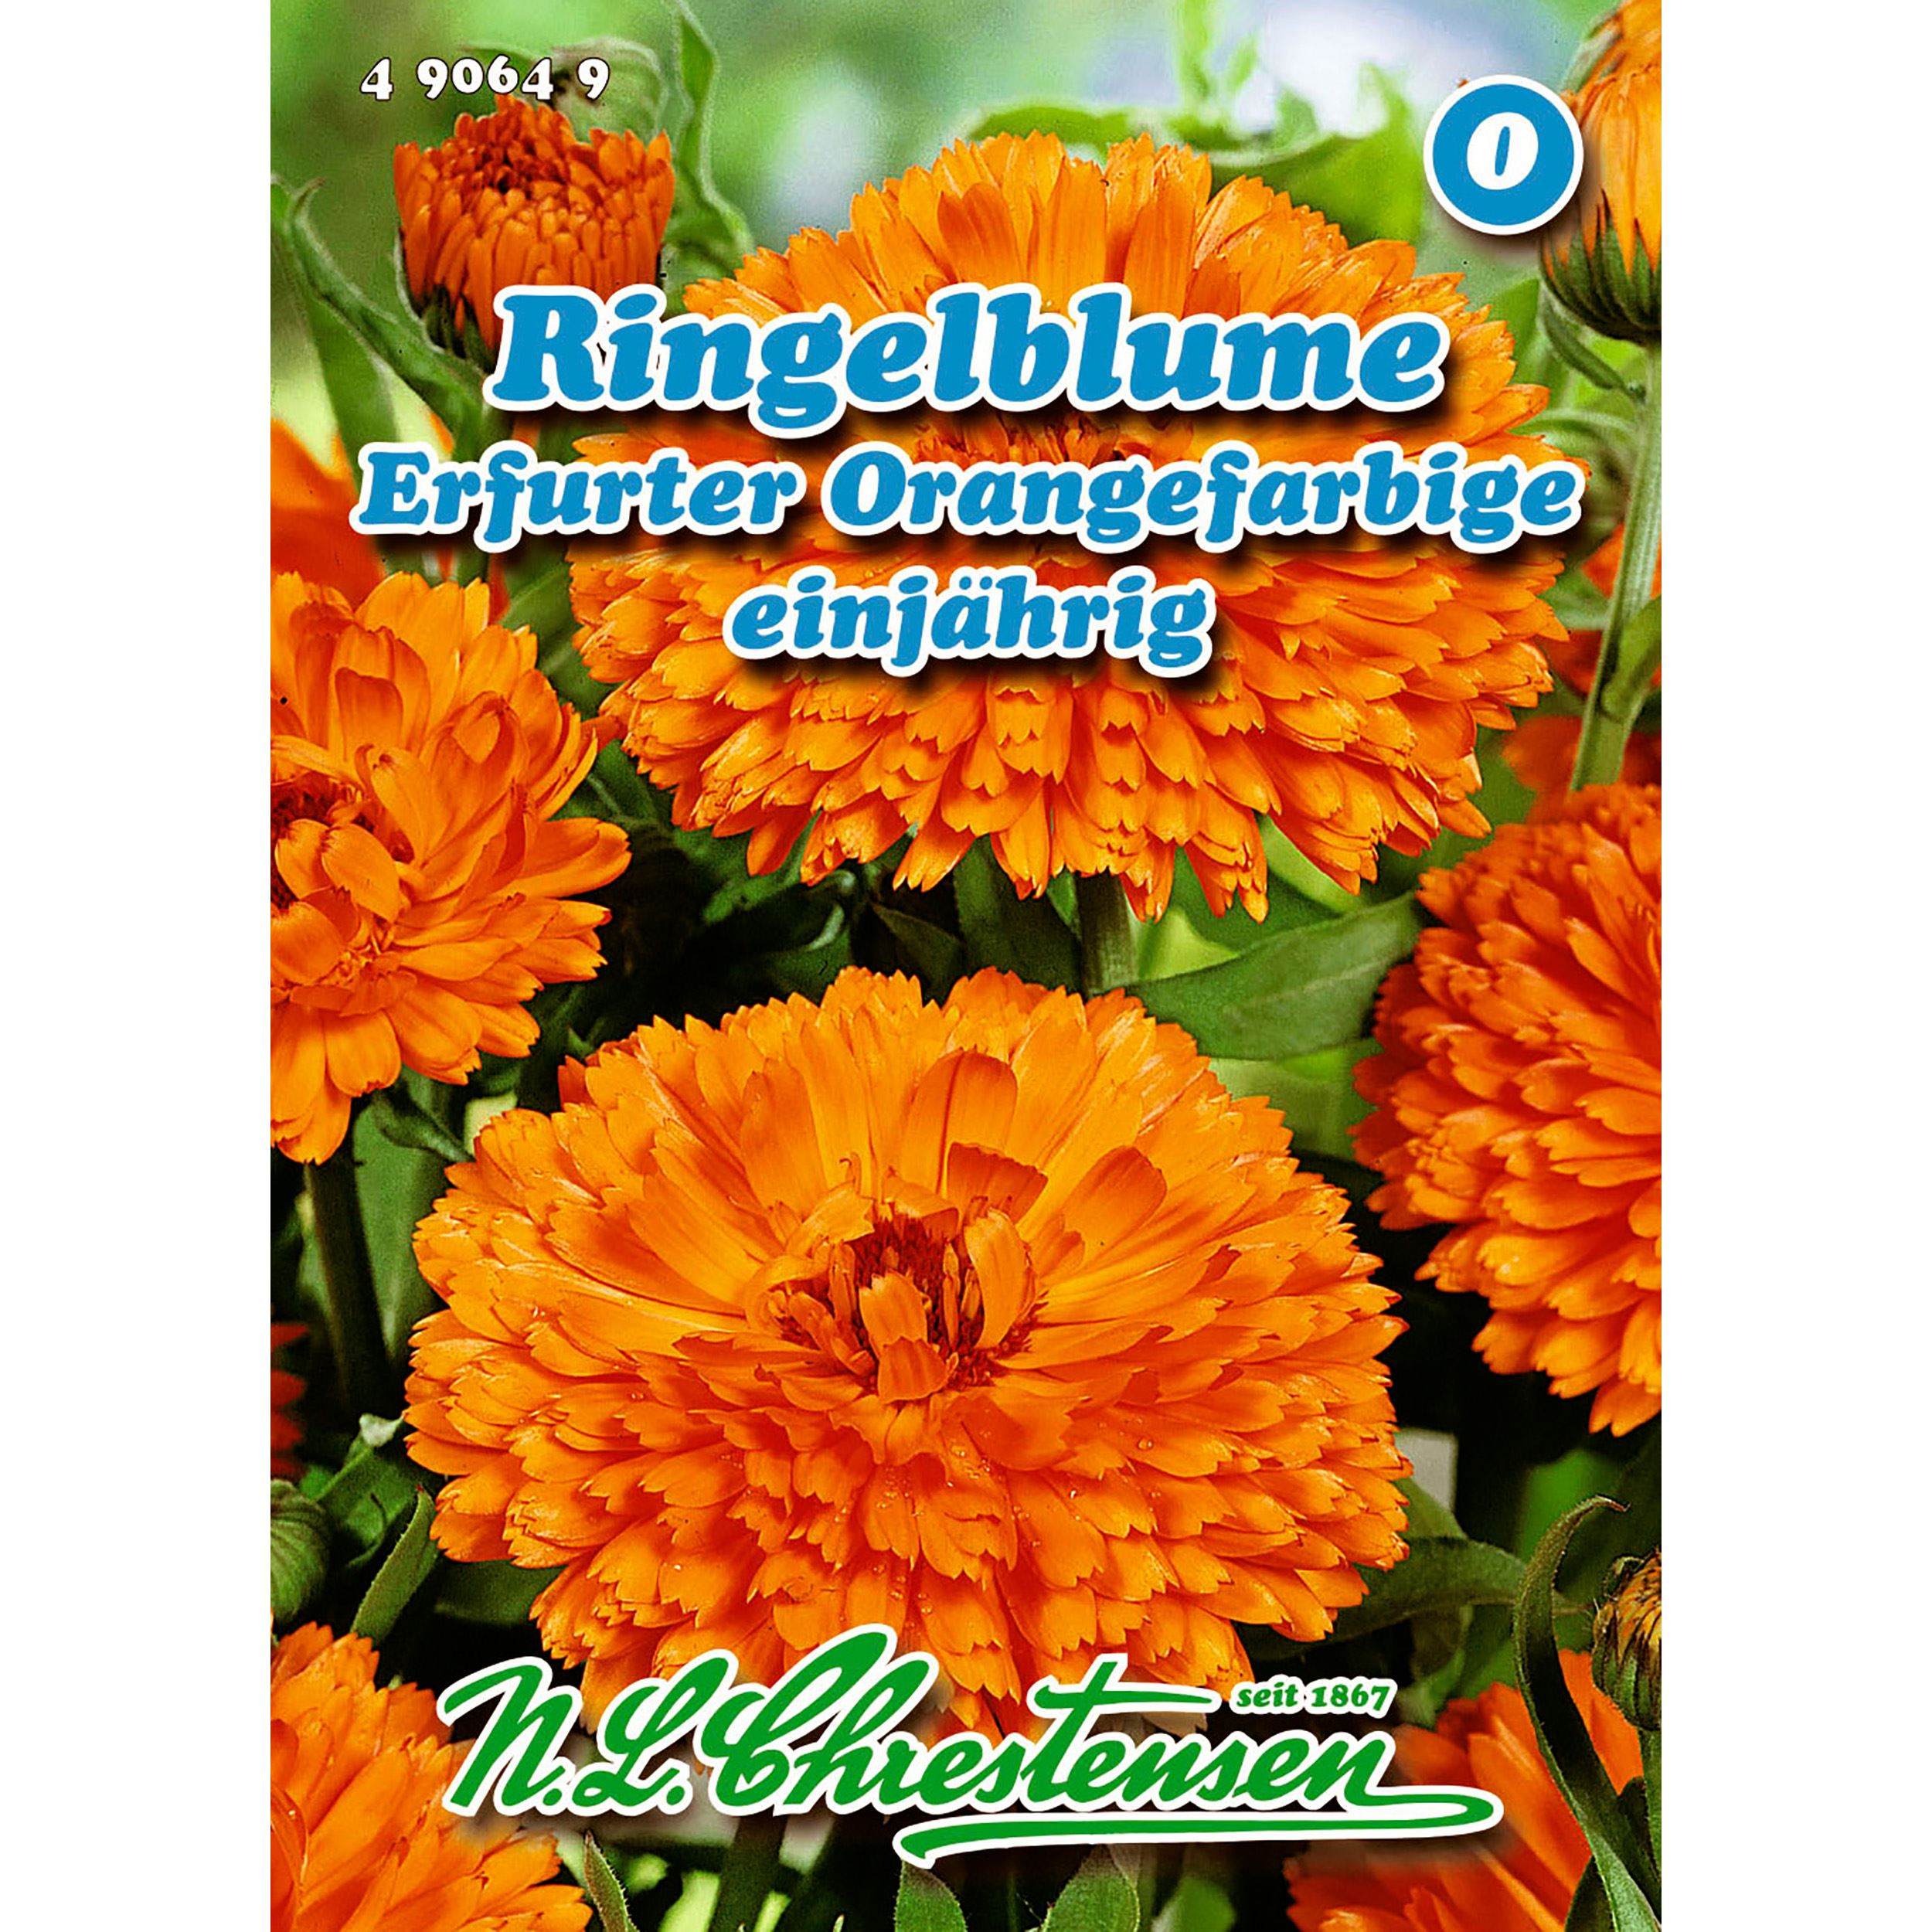 Ringelblume, Erfurter Orangefarbige